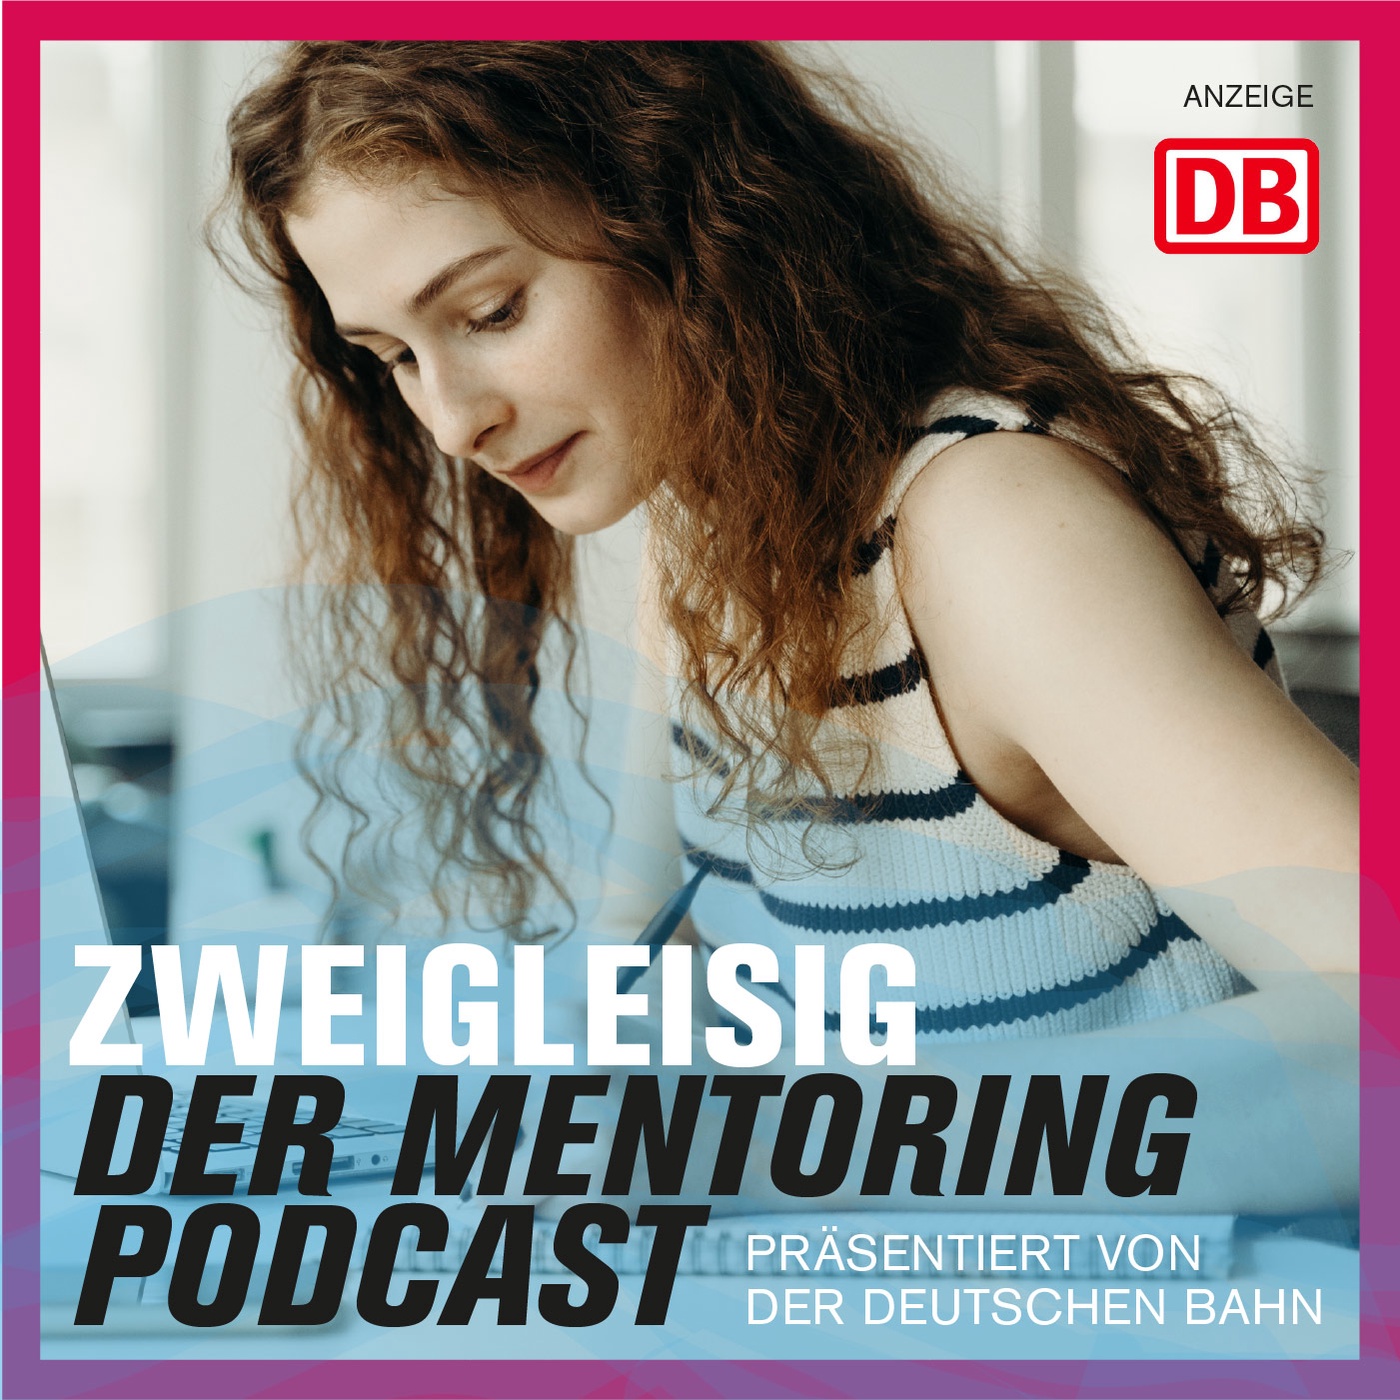 Zweigleisig – der Mentoring Podcast